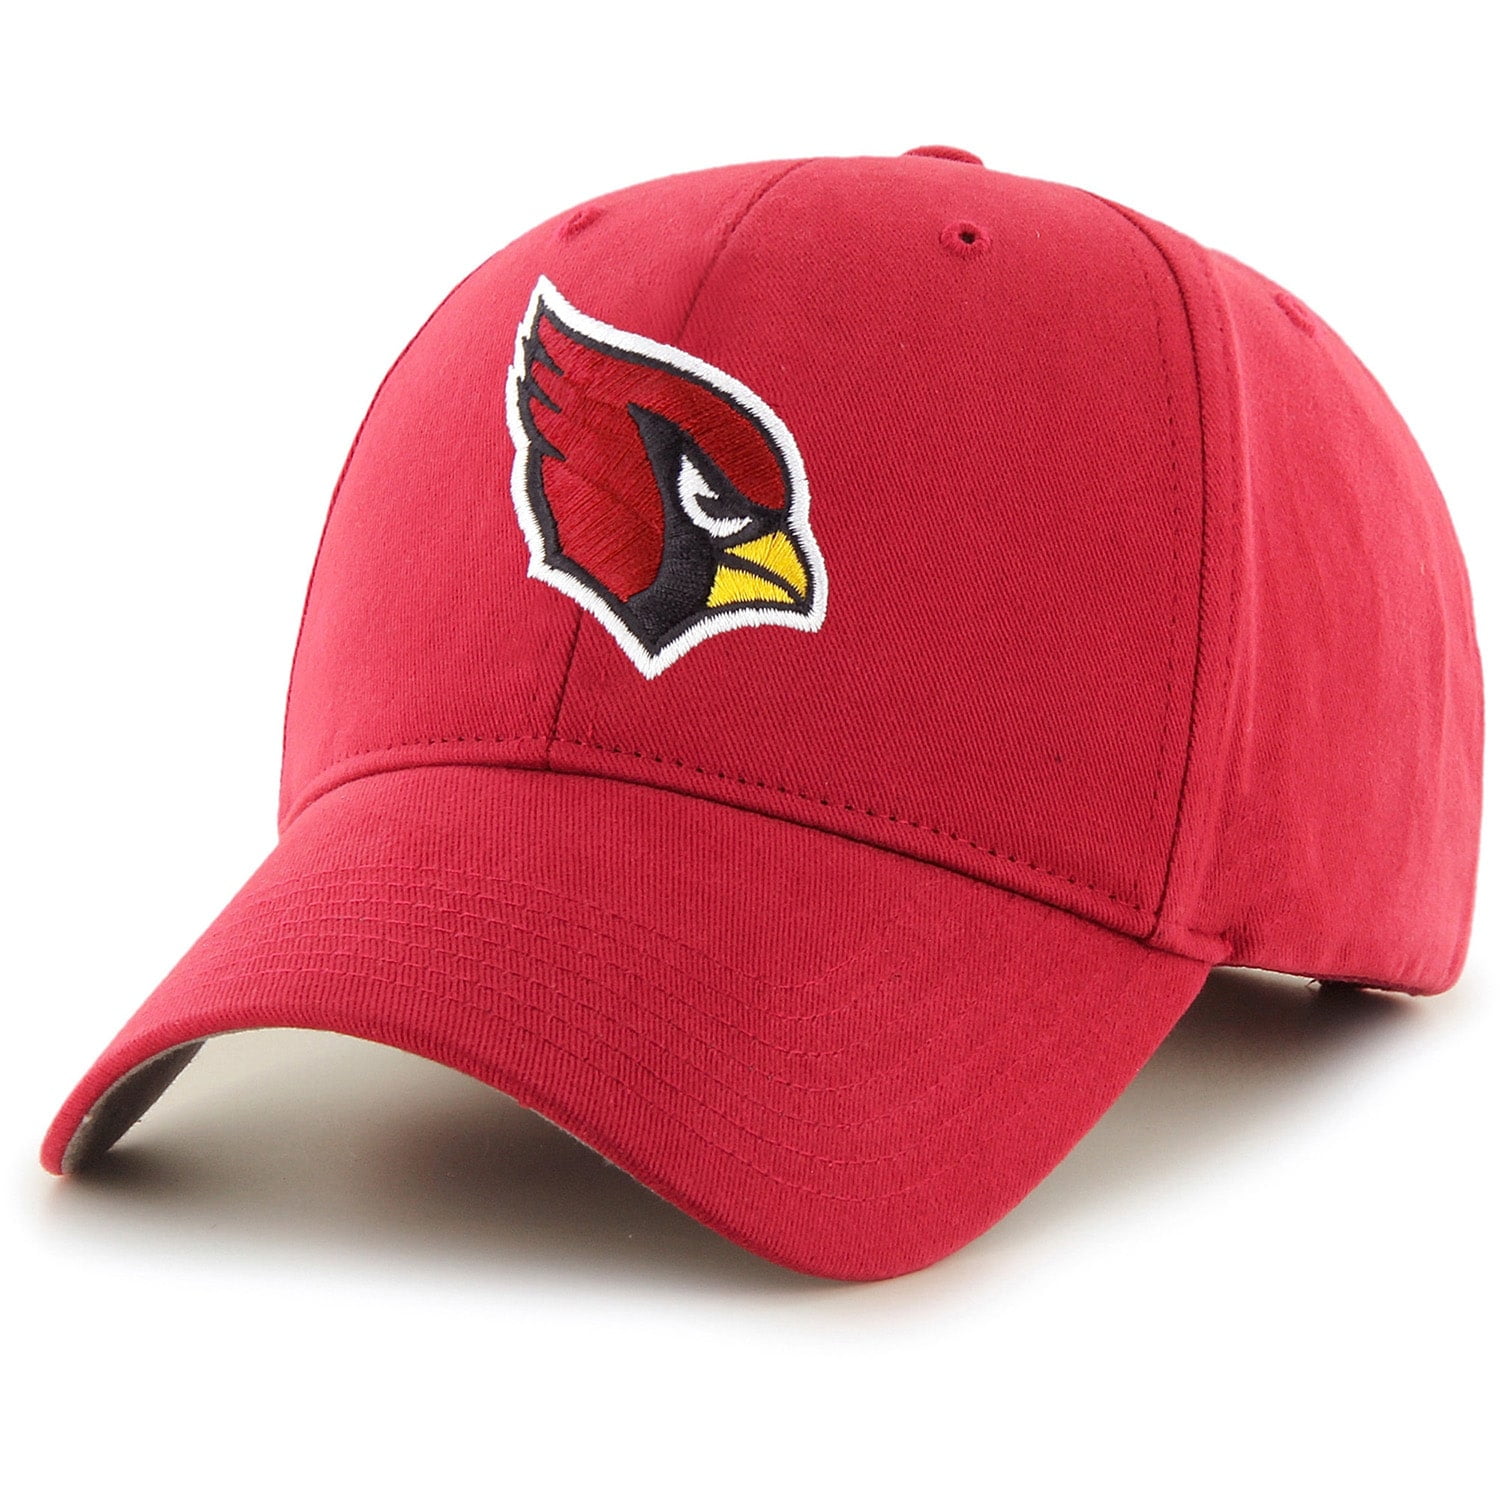 Nfl Arizona Cardinals Hat - Walmart.com - Walmart.com